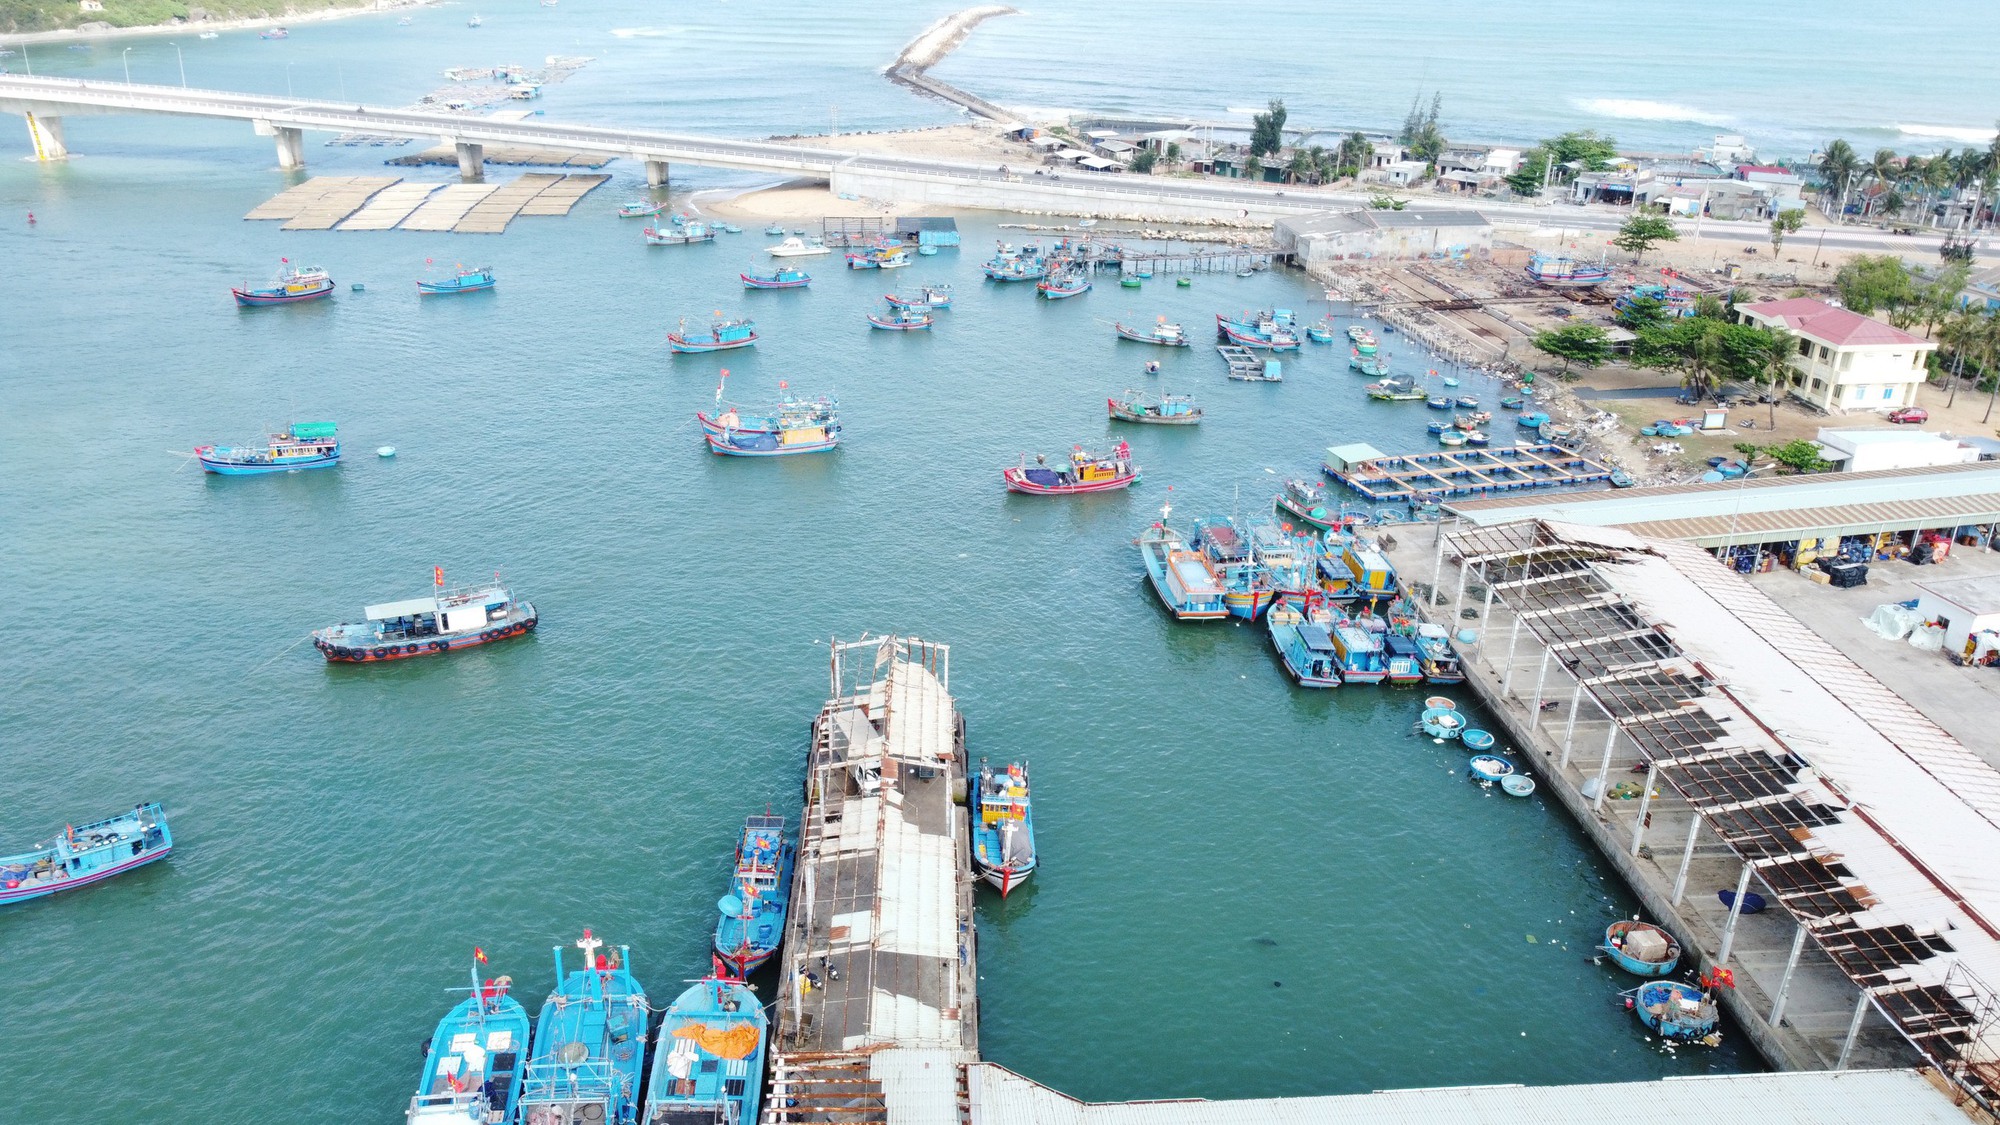 Bình Định: Cận cảnh cảng cá bị xuống cấp nghiêm trọng, gây nguy hiểm cho người dân - Ảnh 3.